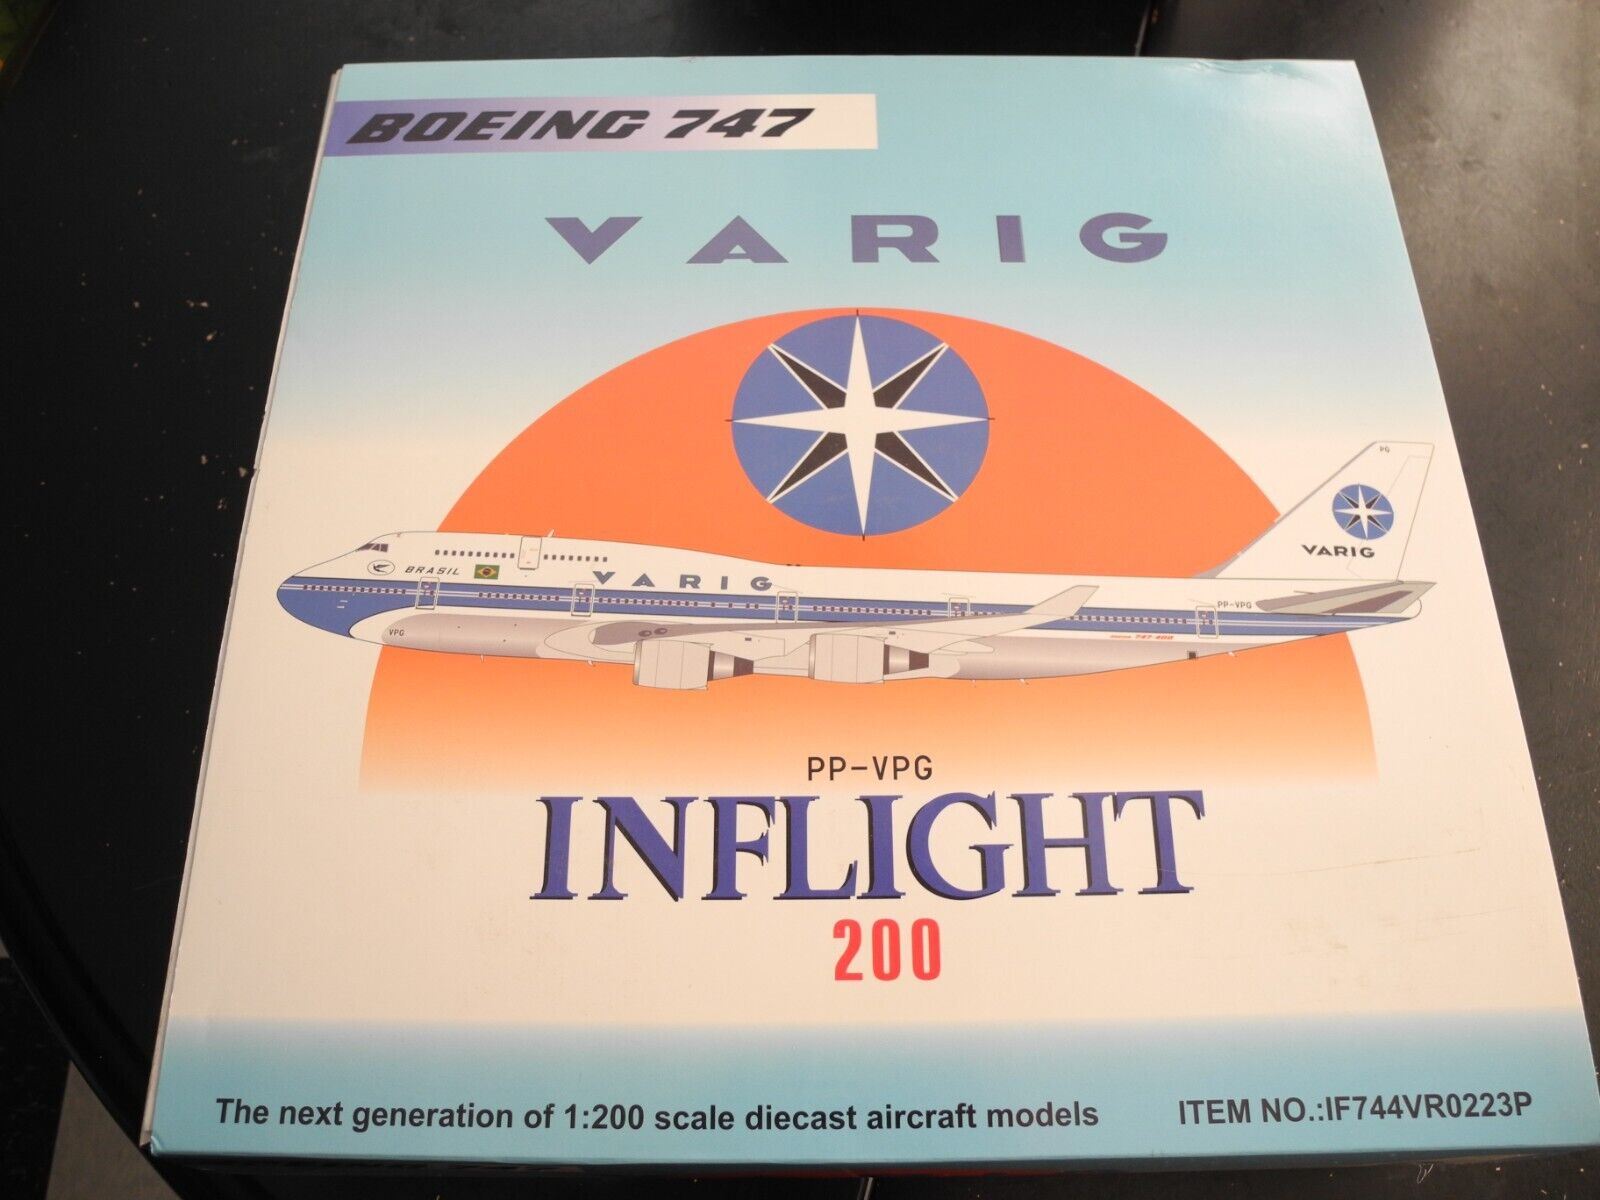 Super RARE Inflight 200 Boeing 747 VARIG, Retired, Hard to Find